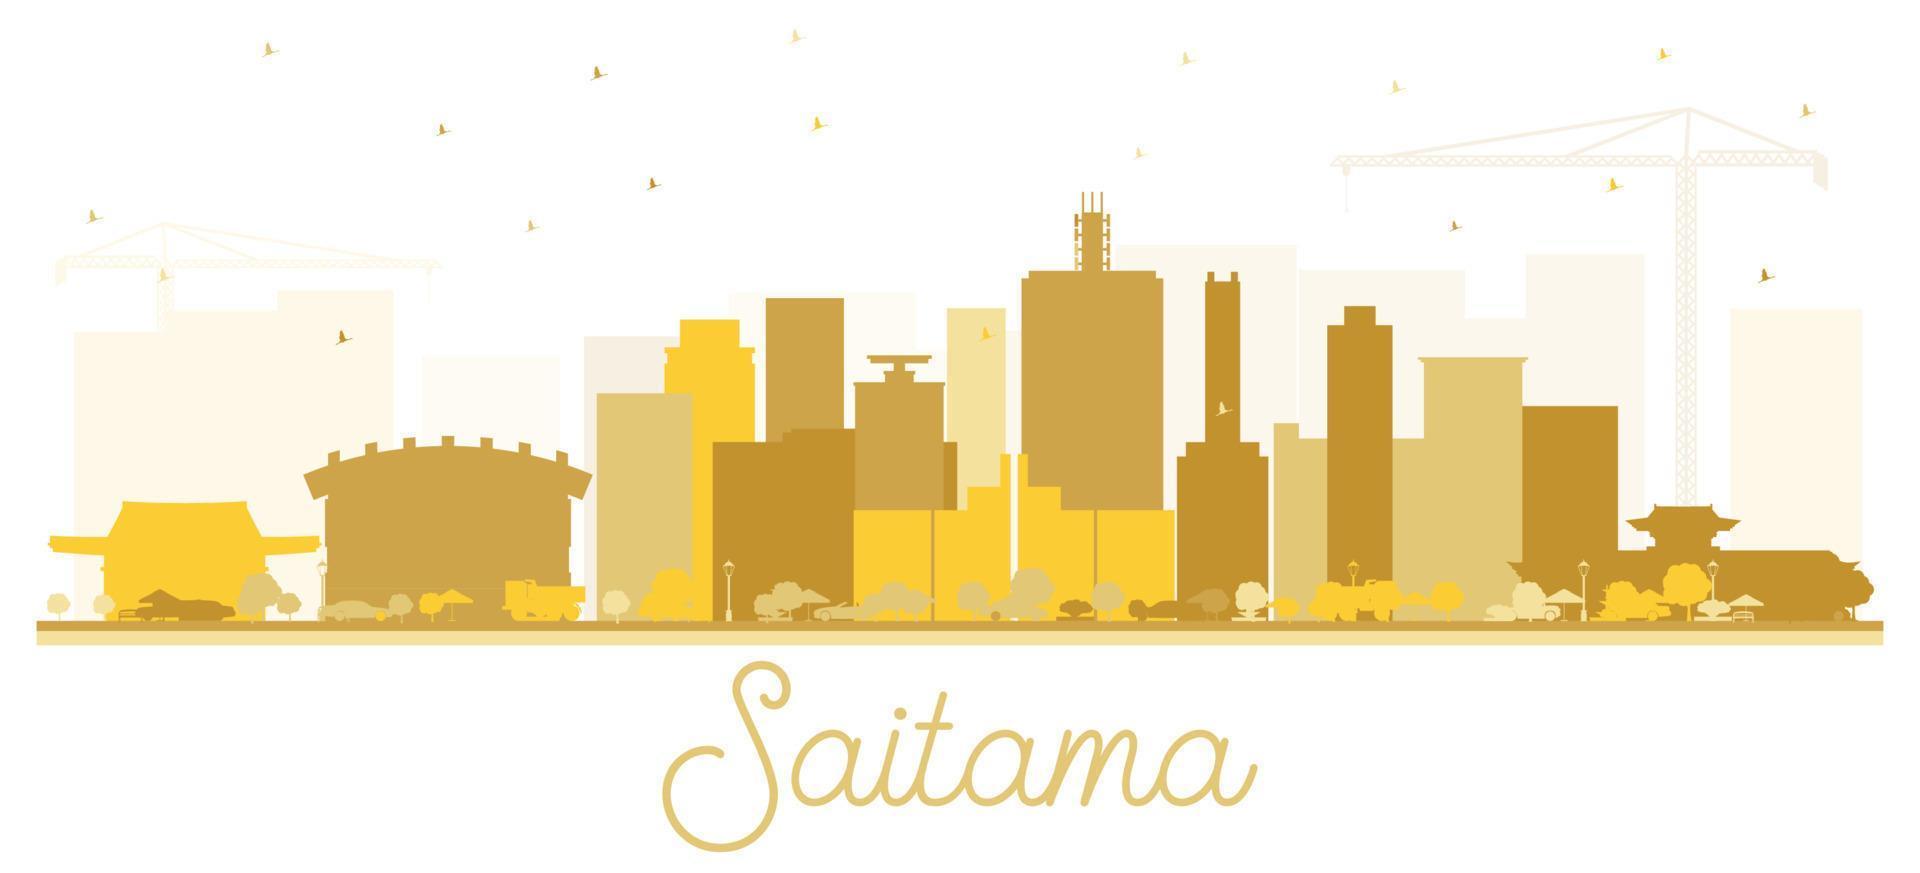 silhueta do horizonte da cidade de japão de saitama com edifícios dourados isolados no branco. vetor